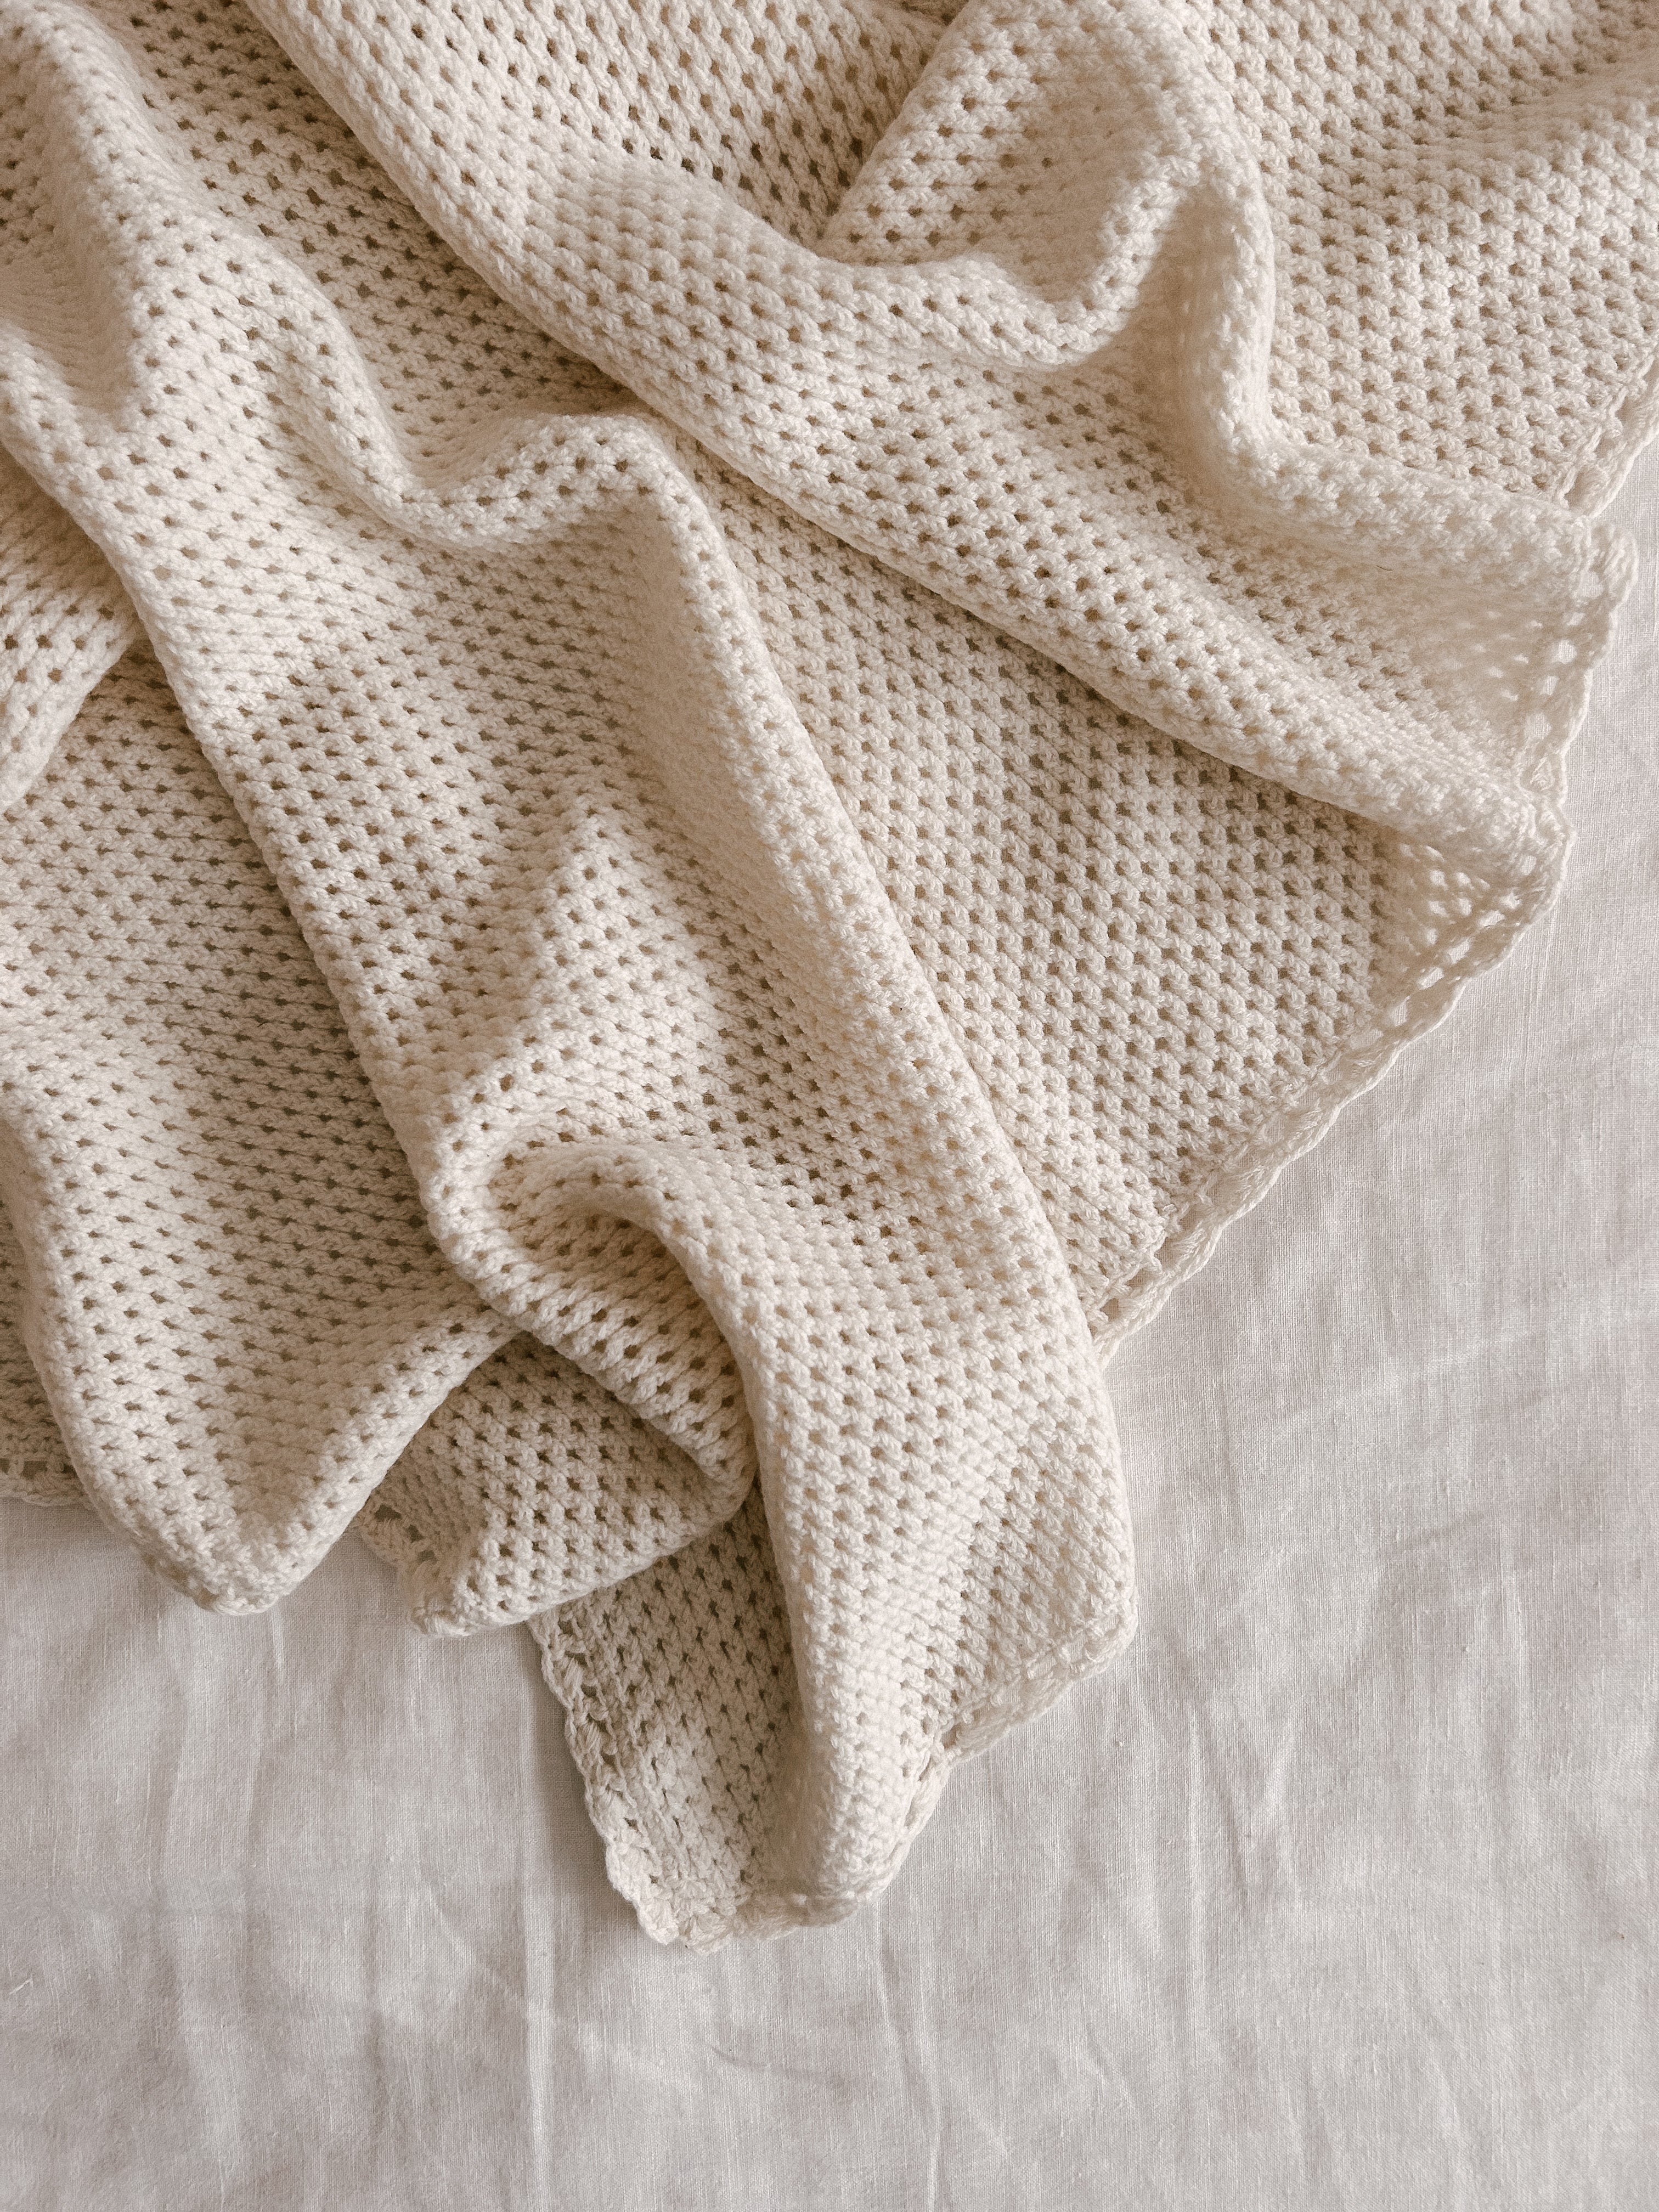 Heirloom 100% Wool Receiving Newborn Blanket